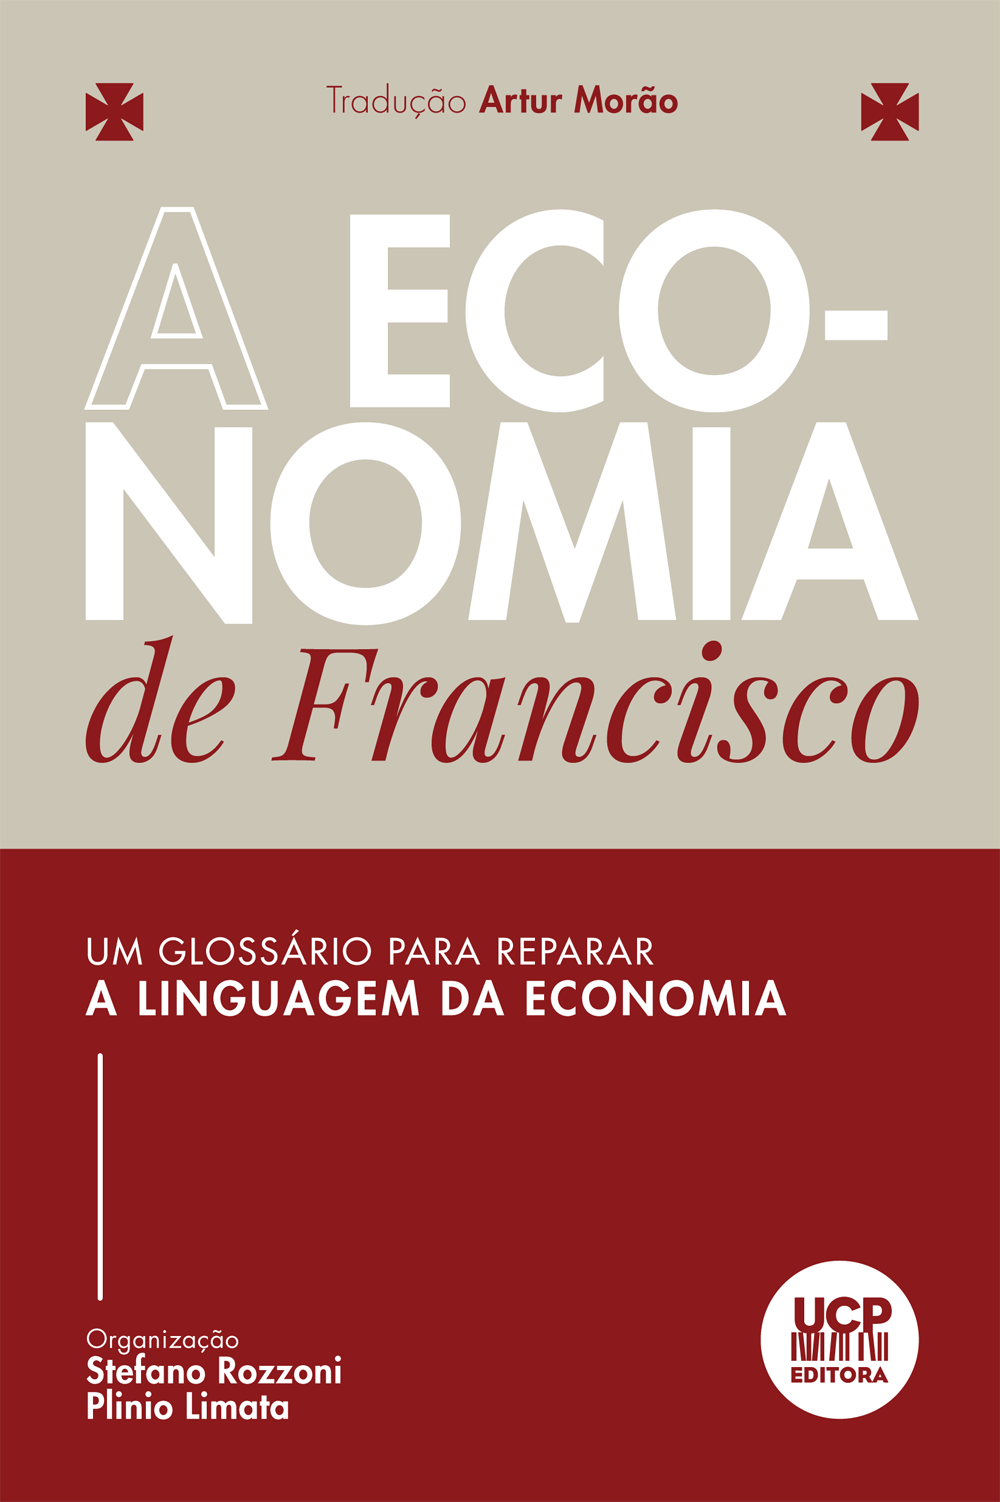 A ECONOMIA DE FRANCISCO
 - Um glossário para reparar a linguagem da economia